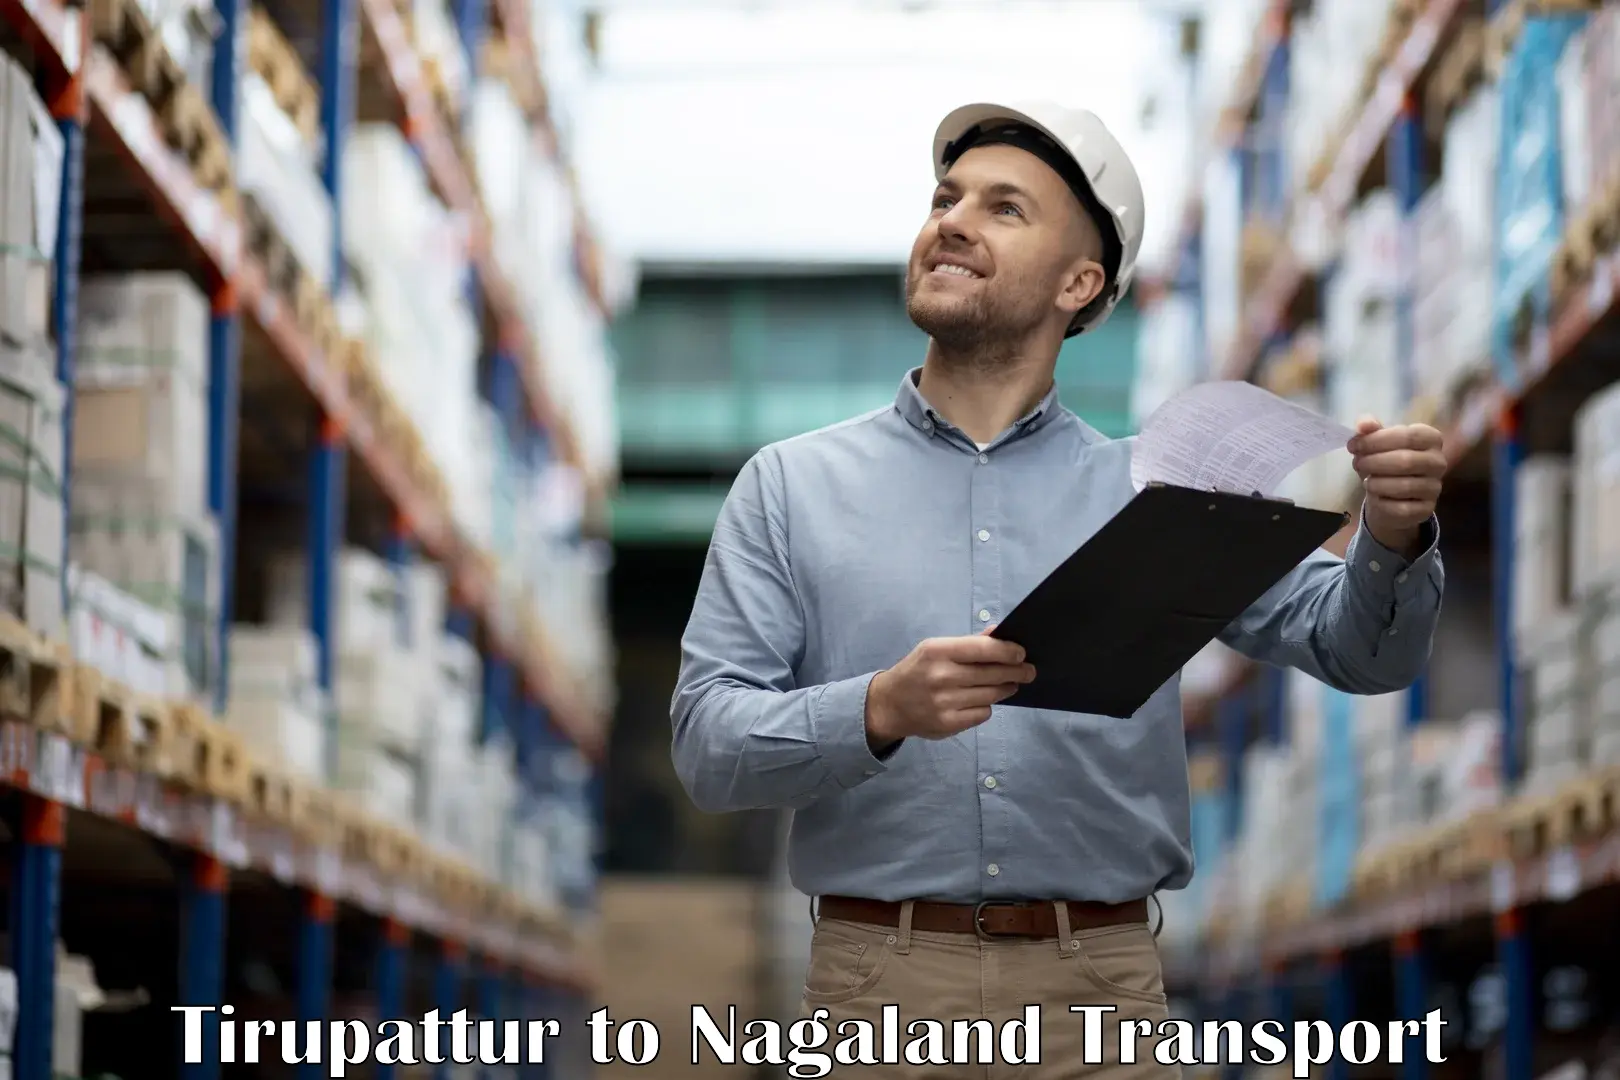 Online transport service Tirupattur to Nagaland